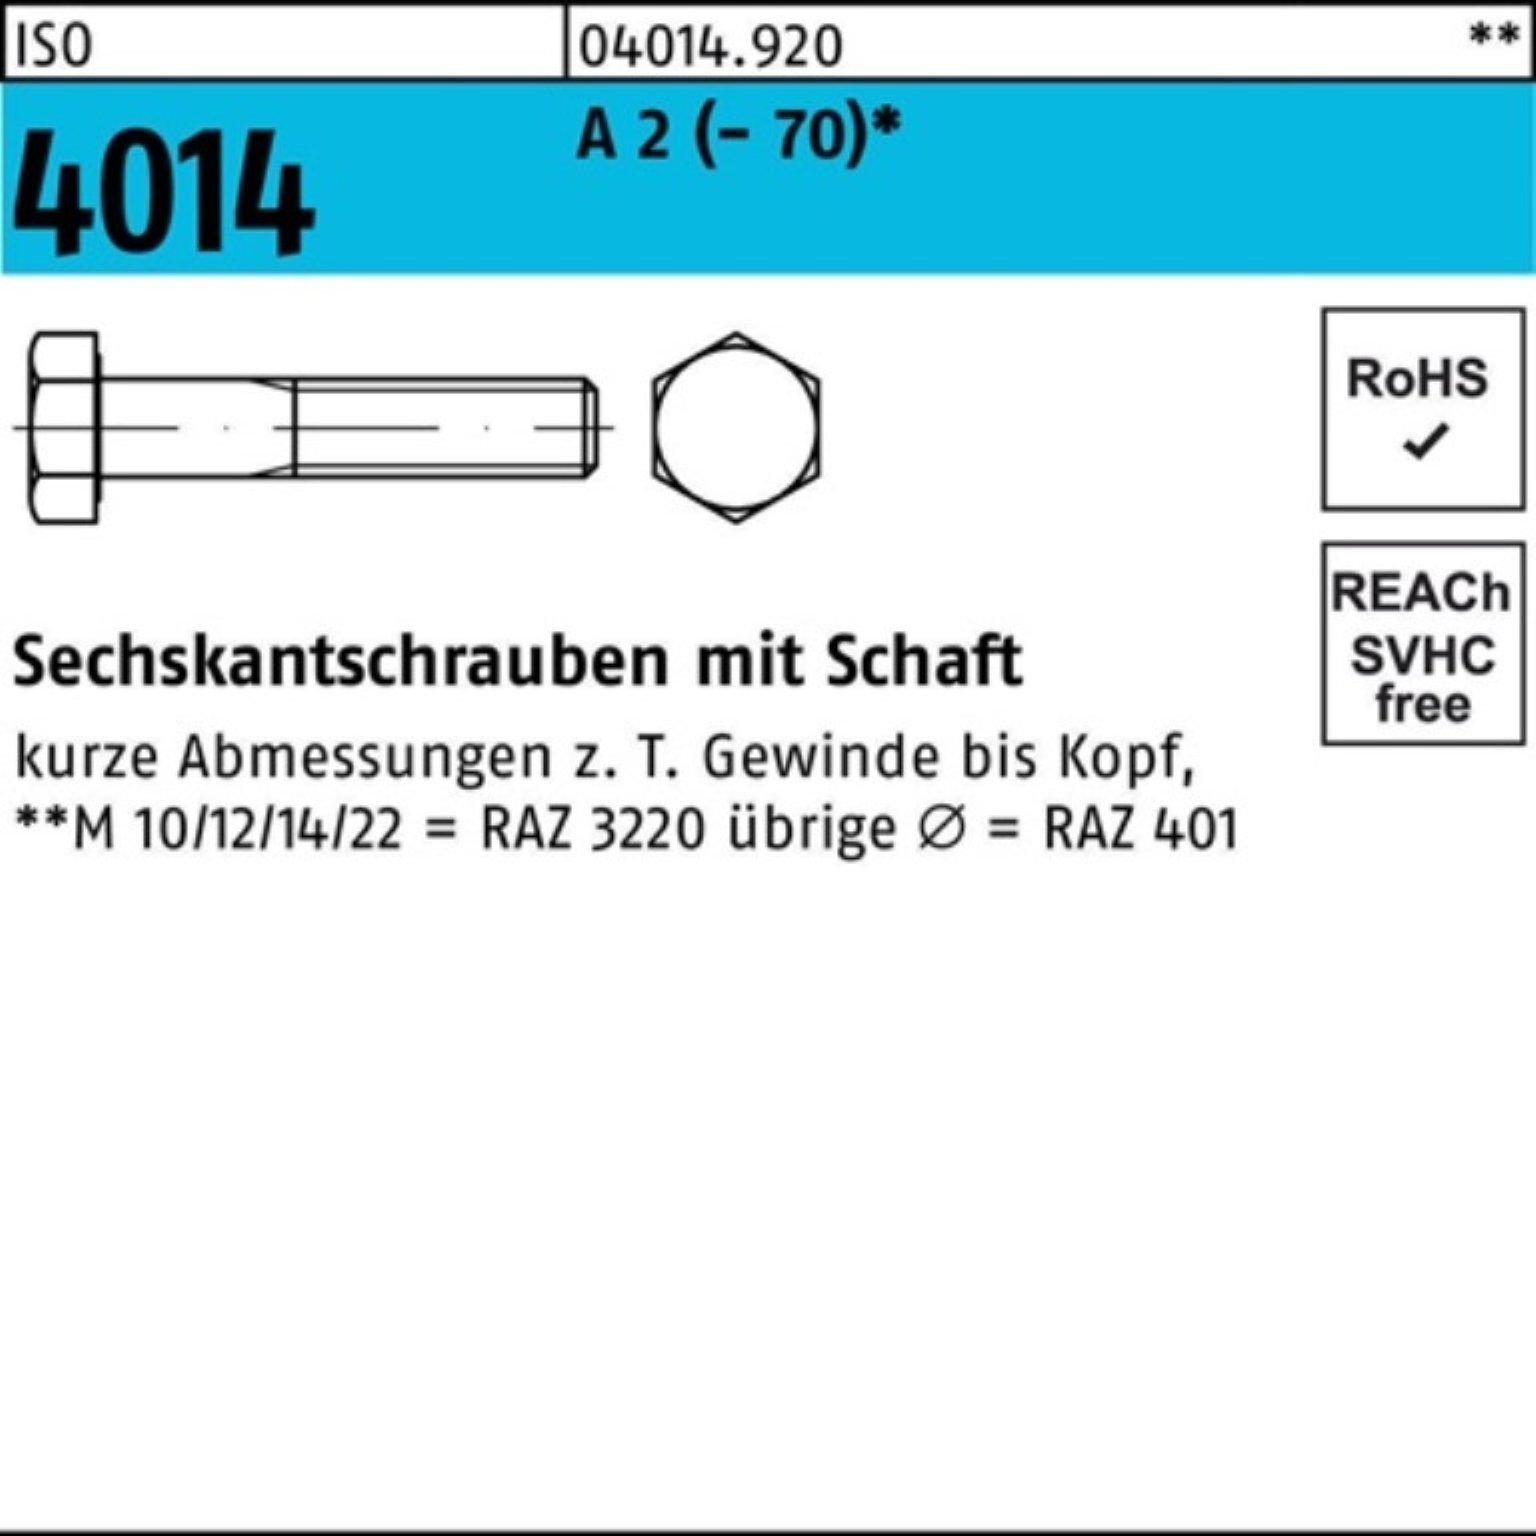 Bufab Sechskantschraube 100er Pack Sechskantschraube ISO 4014 Schaft M20x 240 A 2 (70) 1 St